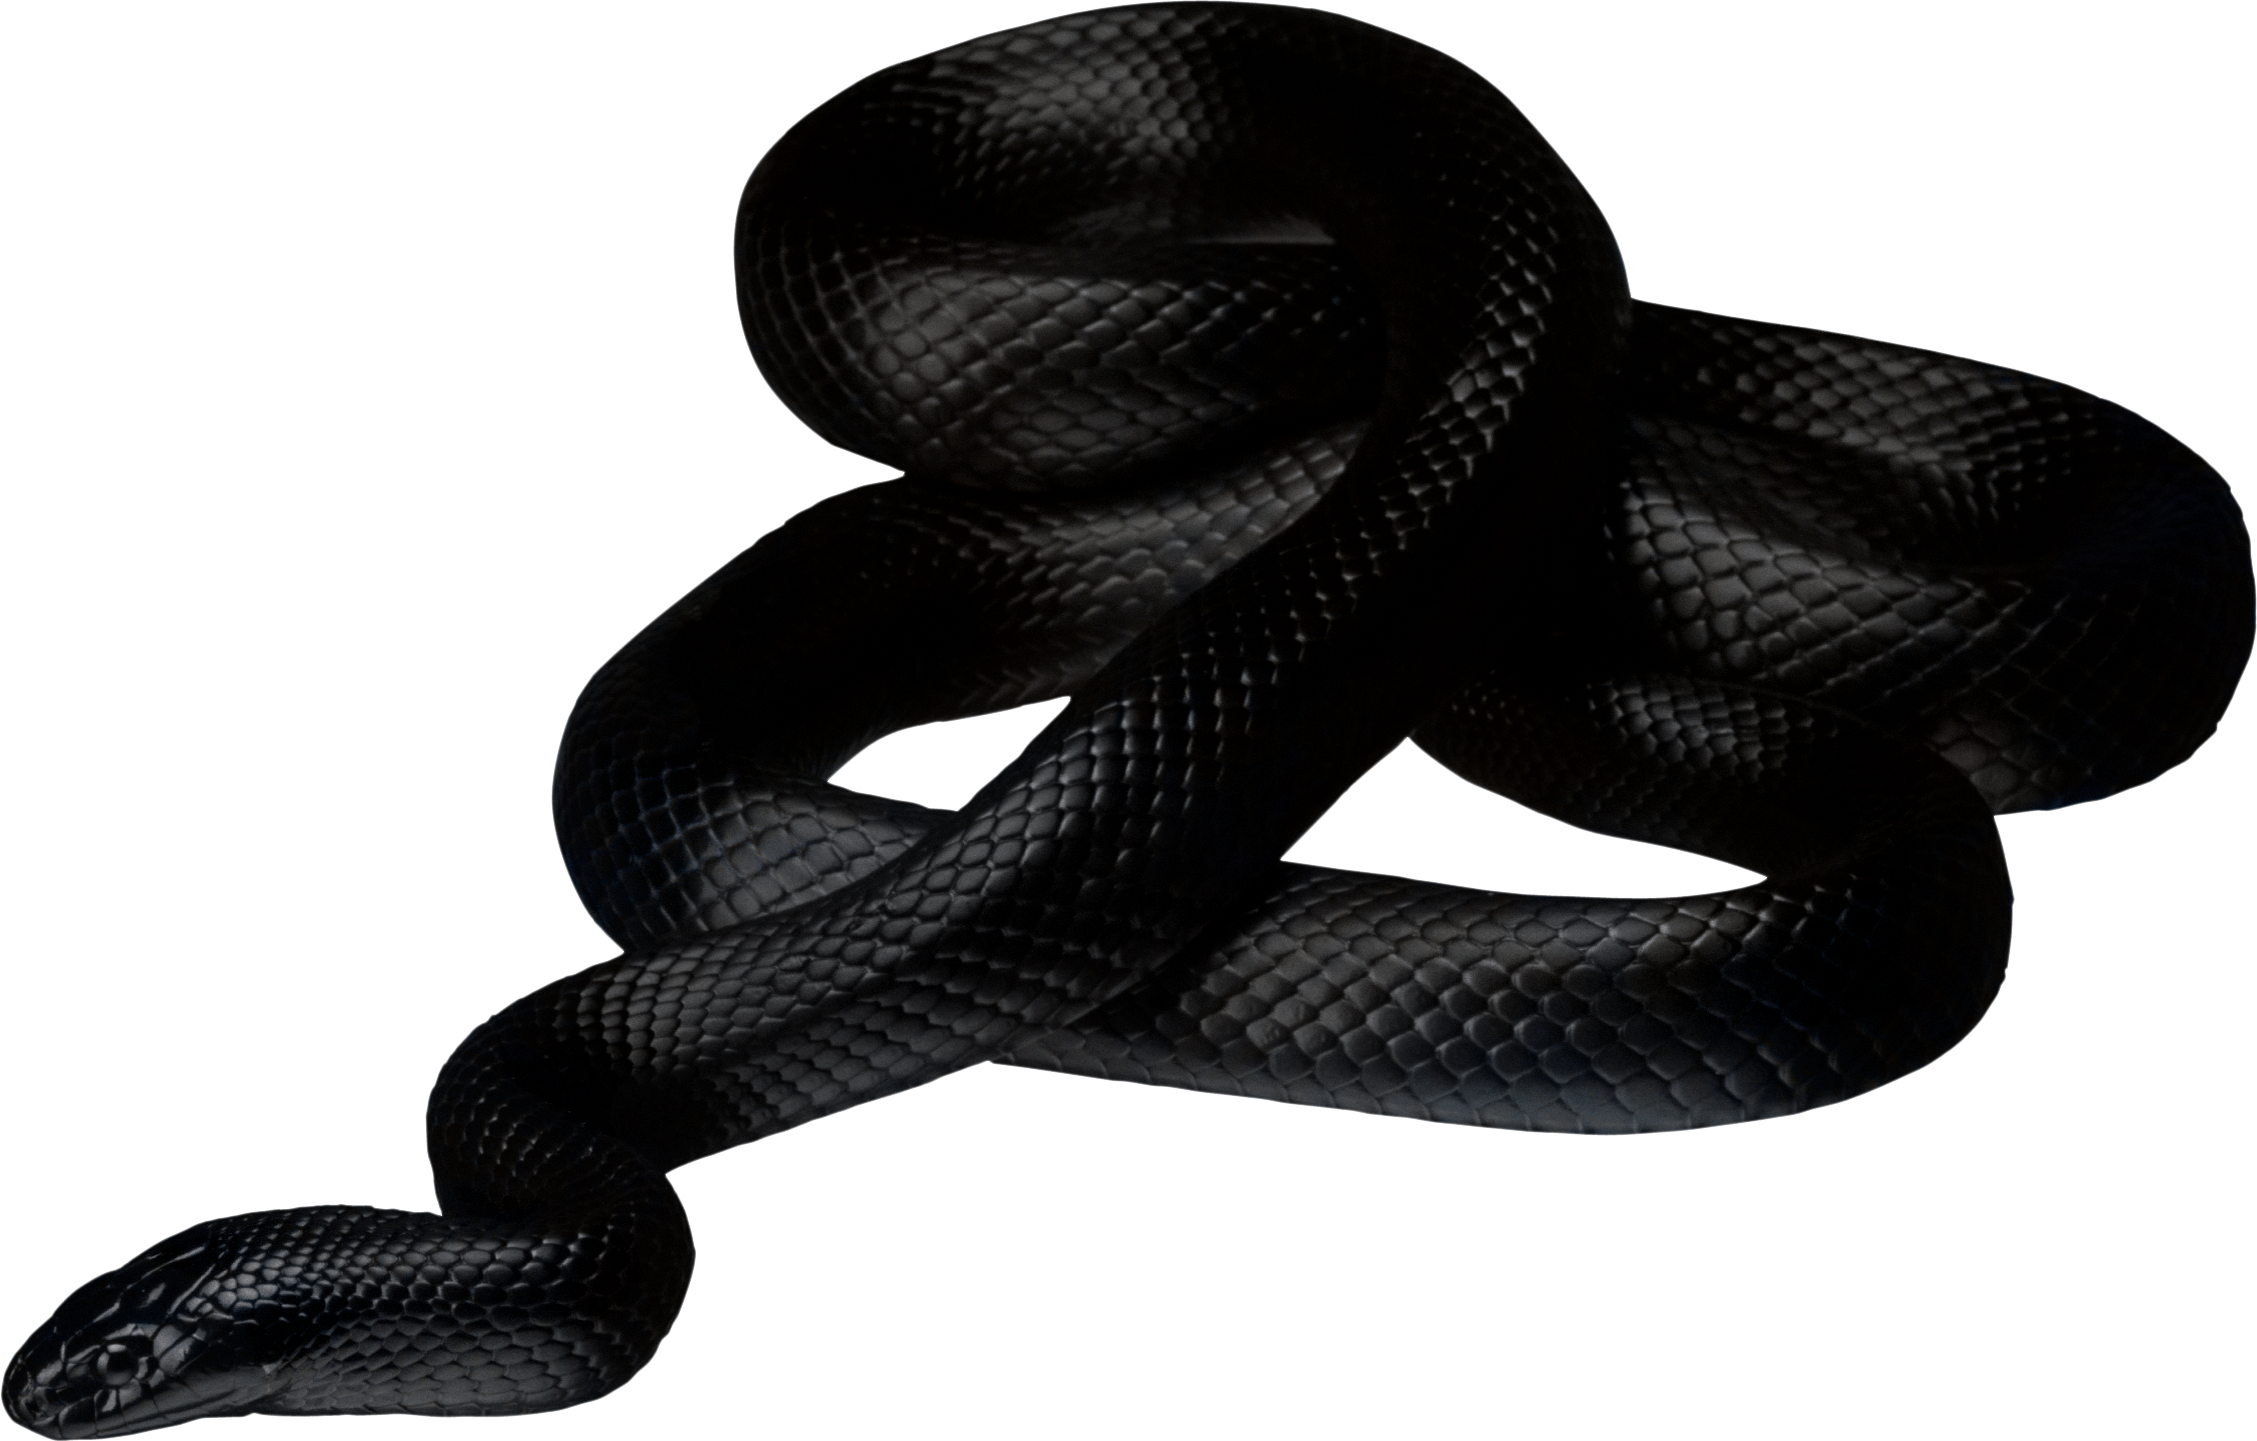 Black Snake In Dream (2257x1441)